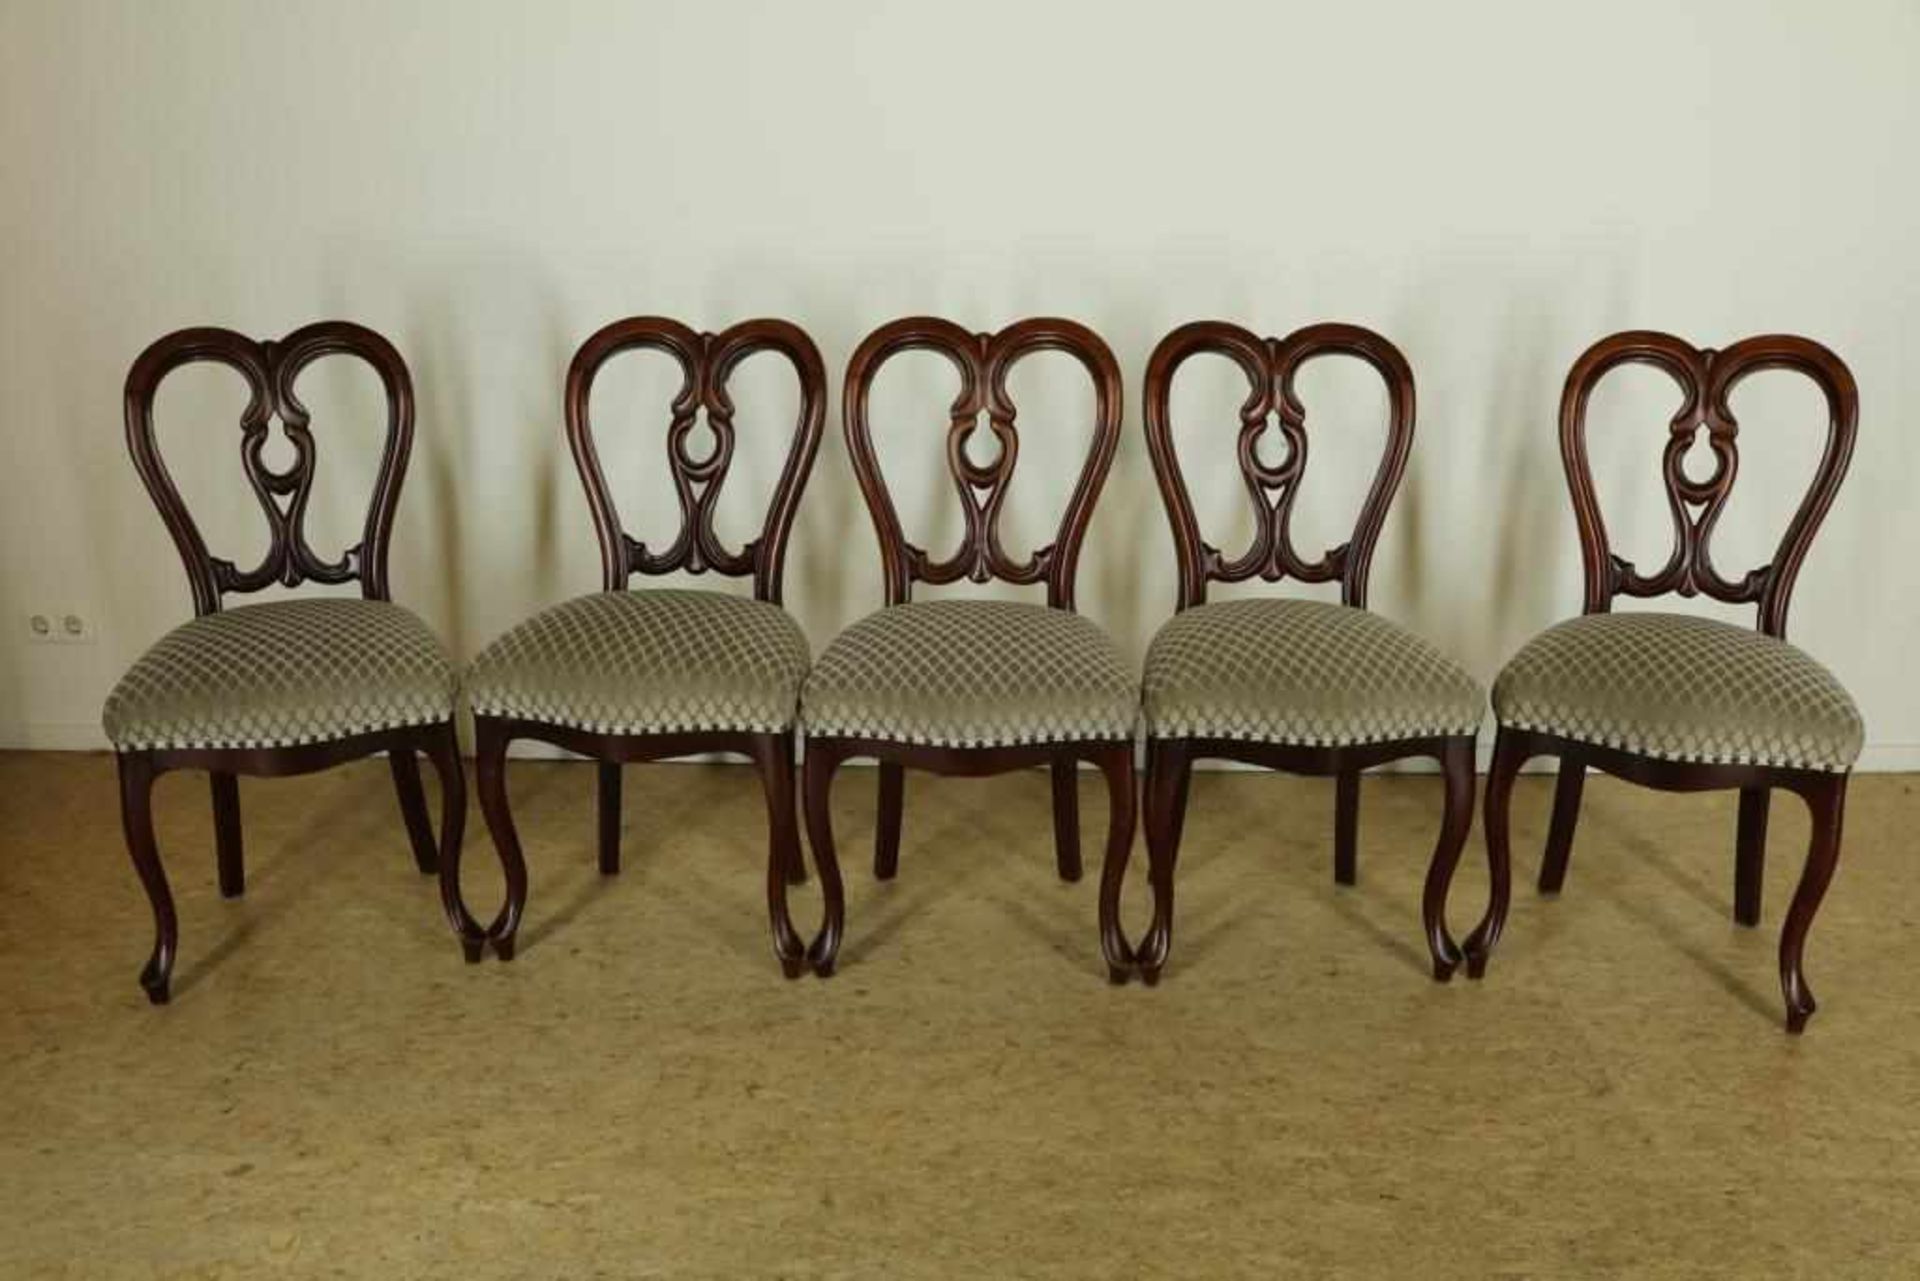 Serie van 5 mahonie stoelen met opengewerkte rugleuning bekleed met geschoren velours, 19e eeuw.